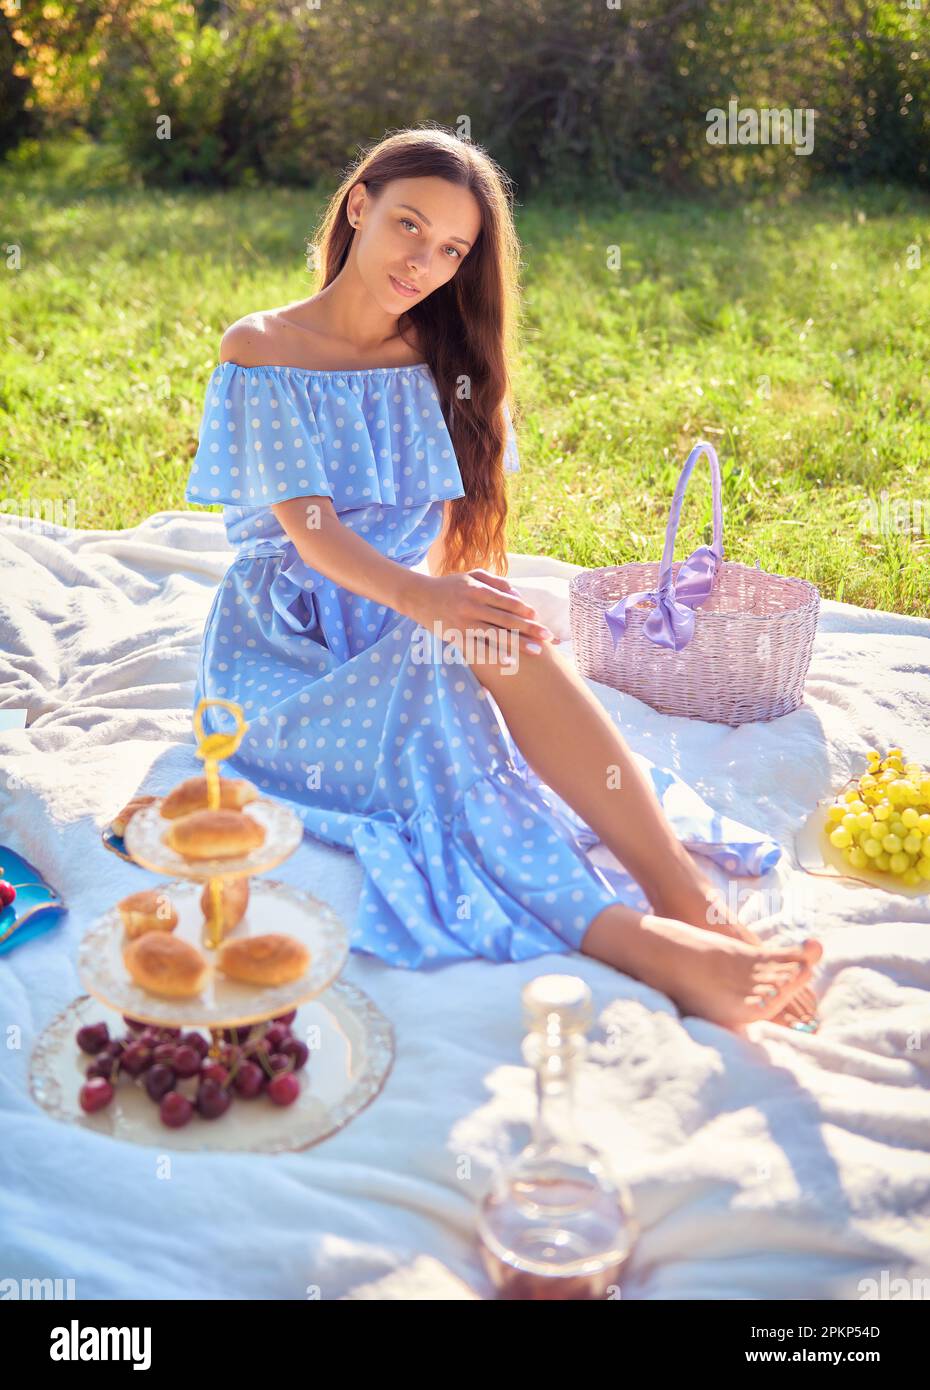 Scène de pique-nique : petite fille douce assise sur un terrain de pique-nique dans le parc. Portrait extérieur de jeune femme adorable en robe bleue Banque D'Images